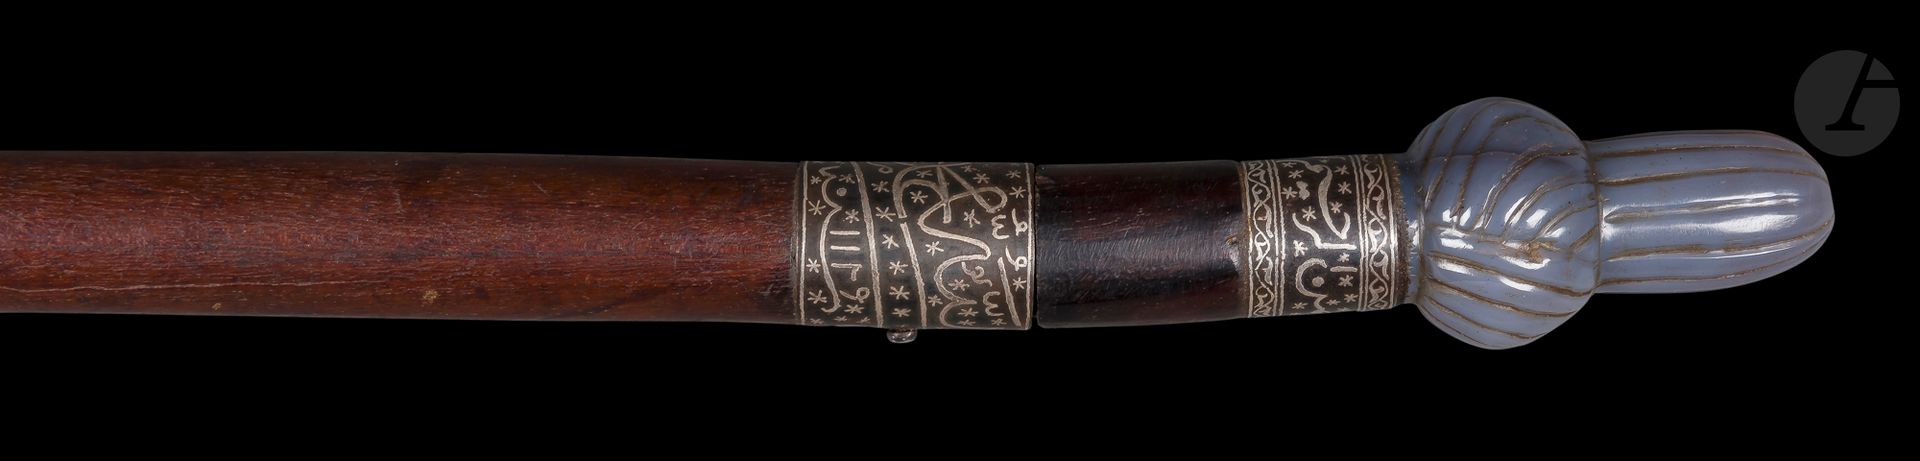 Null Canne-épée, Empire ottoman, datée 1129 H / 1716
Corps cylindrique en bois a&hellip;